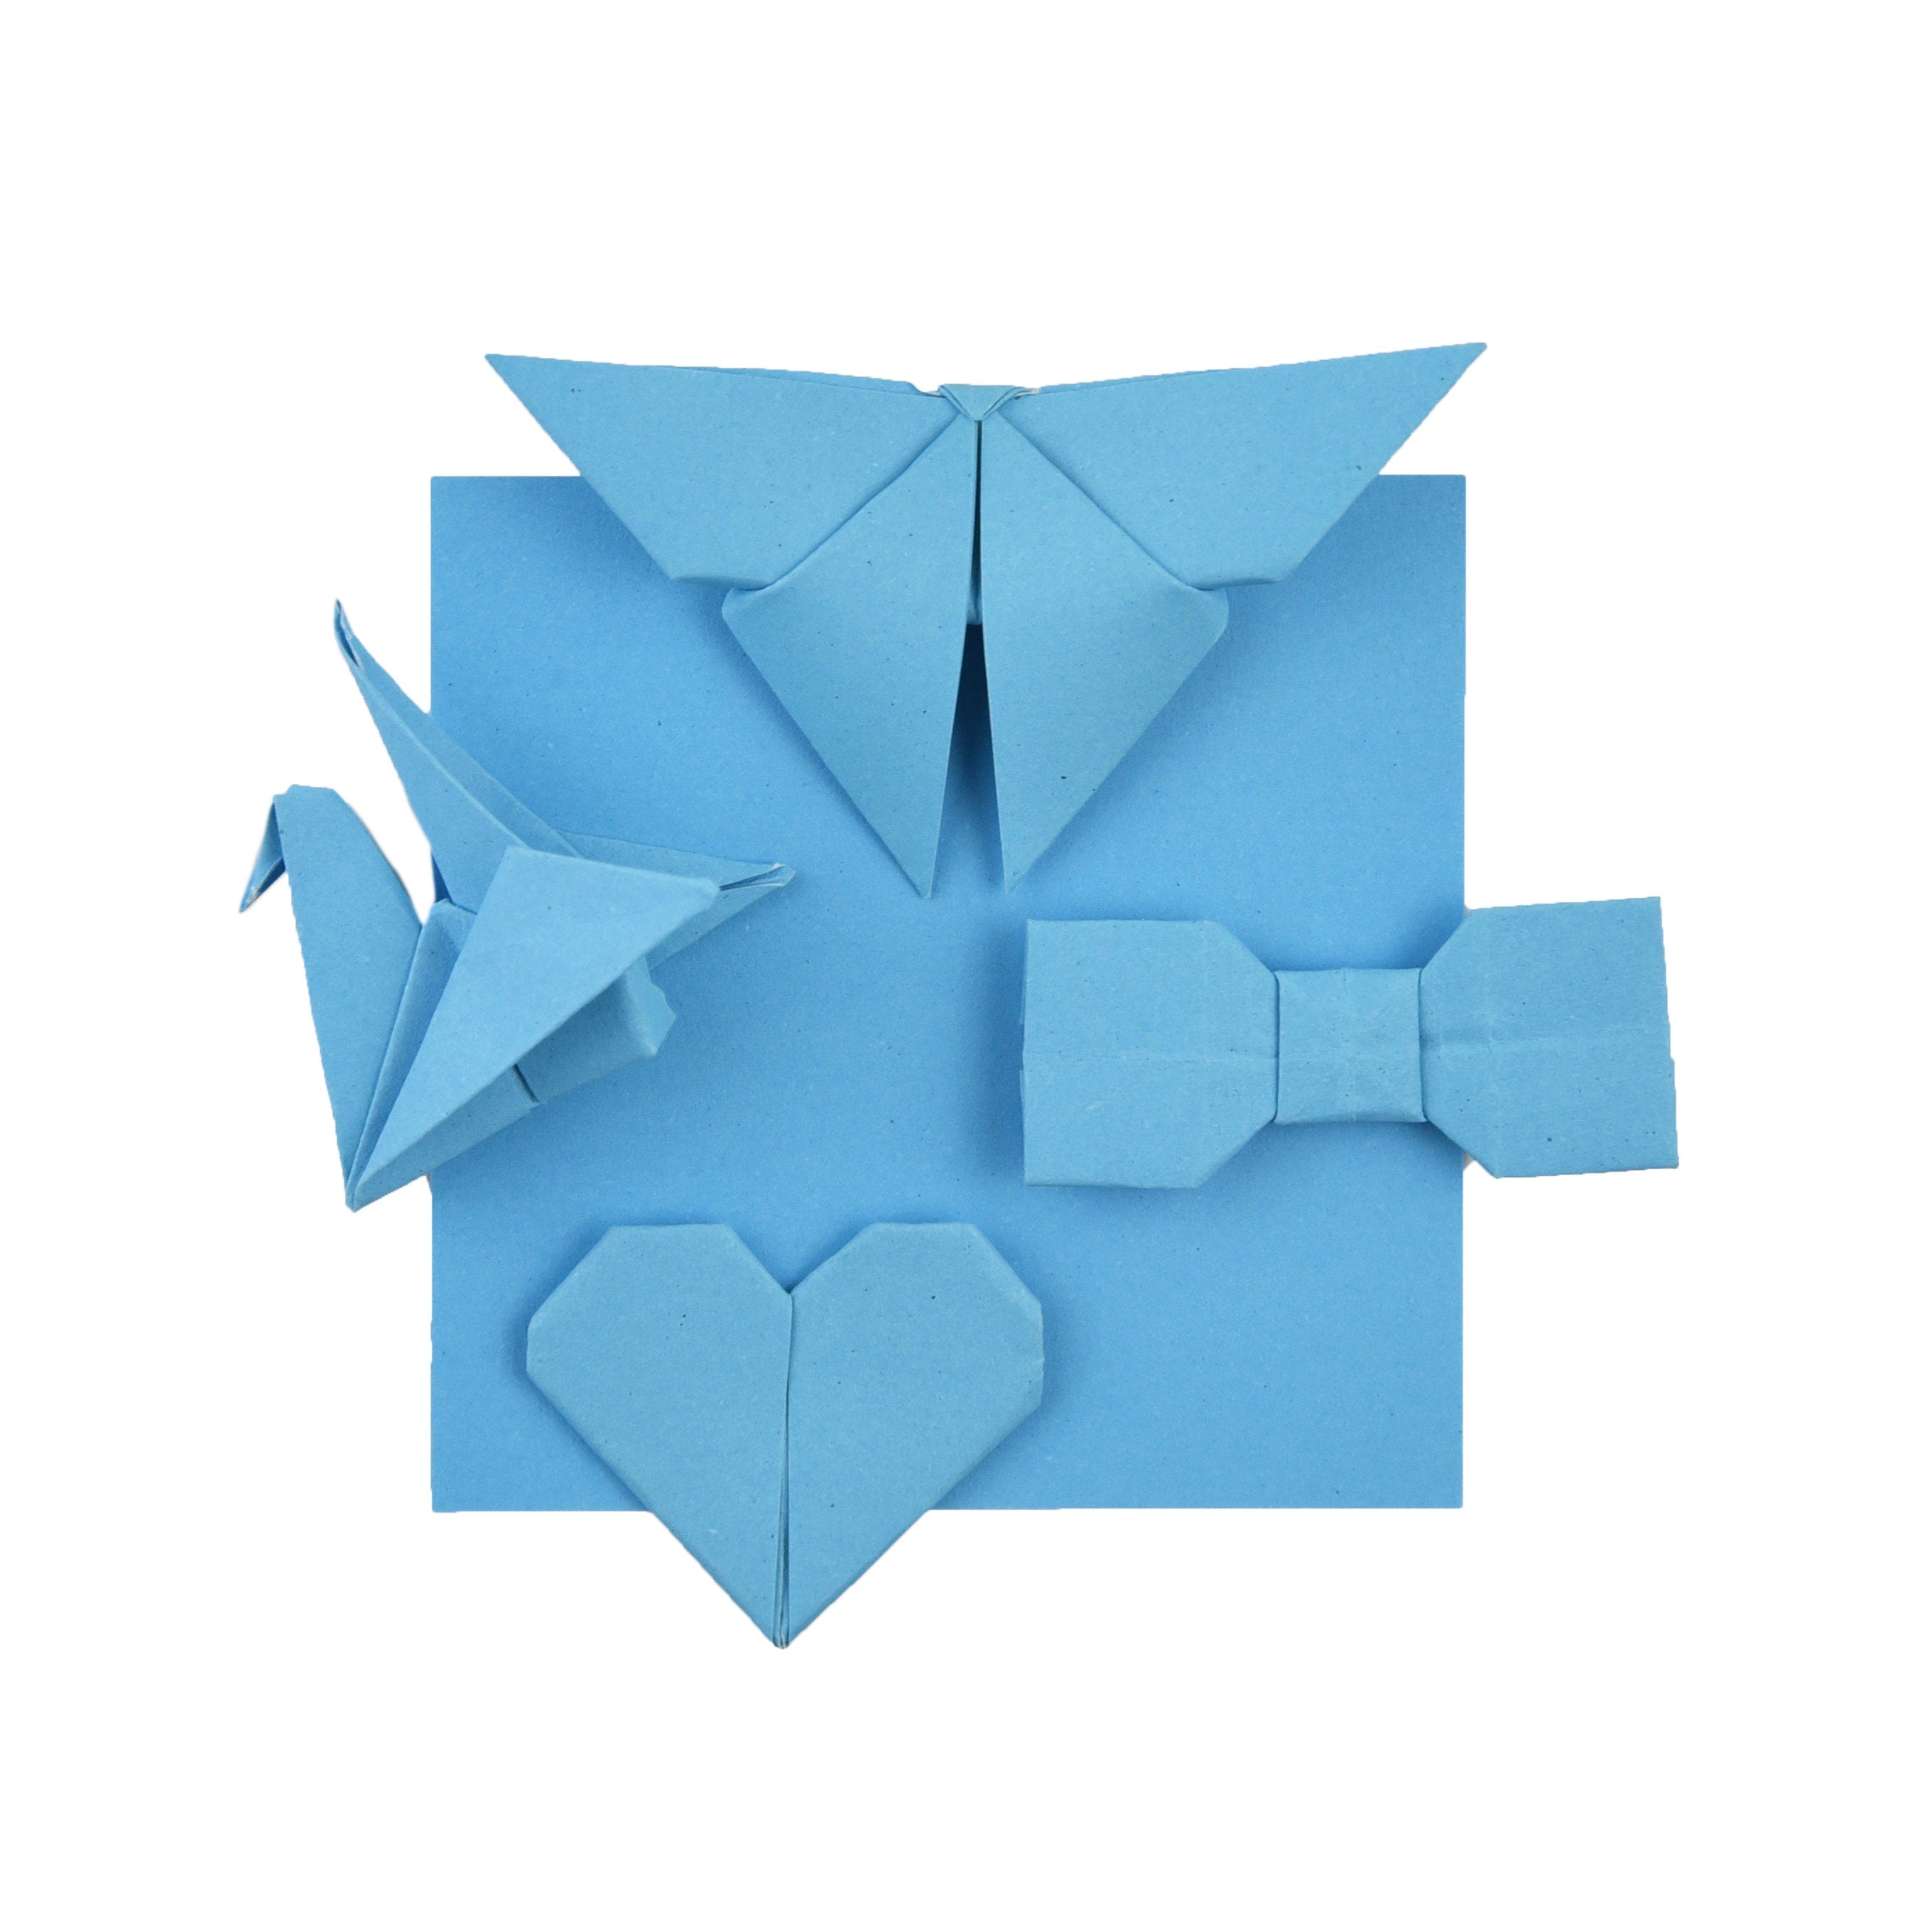 100 Hojas de Papel Origami - 6x6 pulgadas - Paquete de Papel Cuadrado para Plegar, Grullas de Origami y Decoración - S17